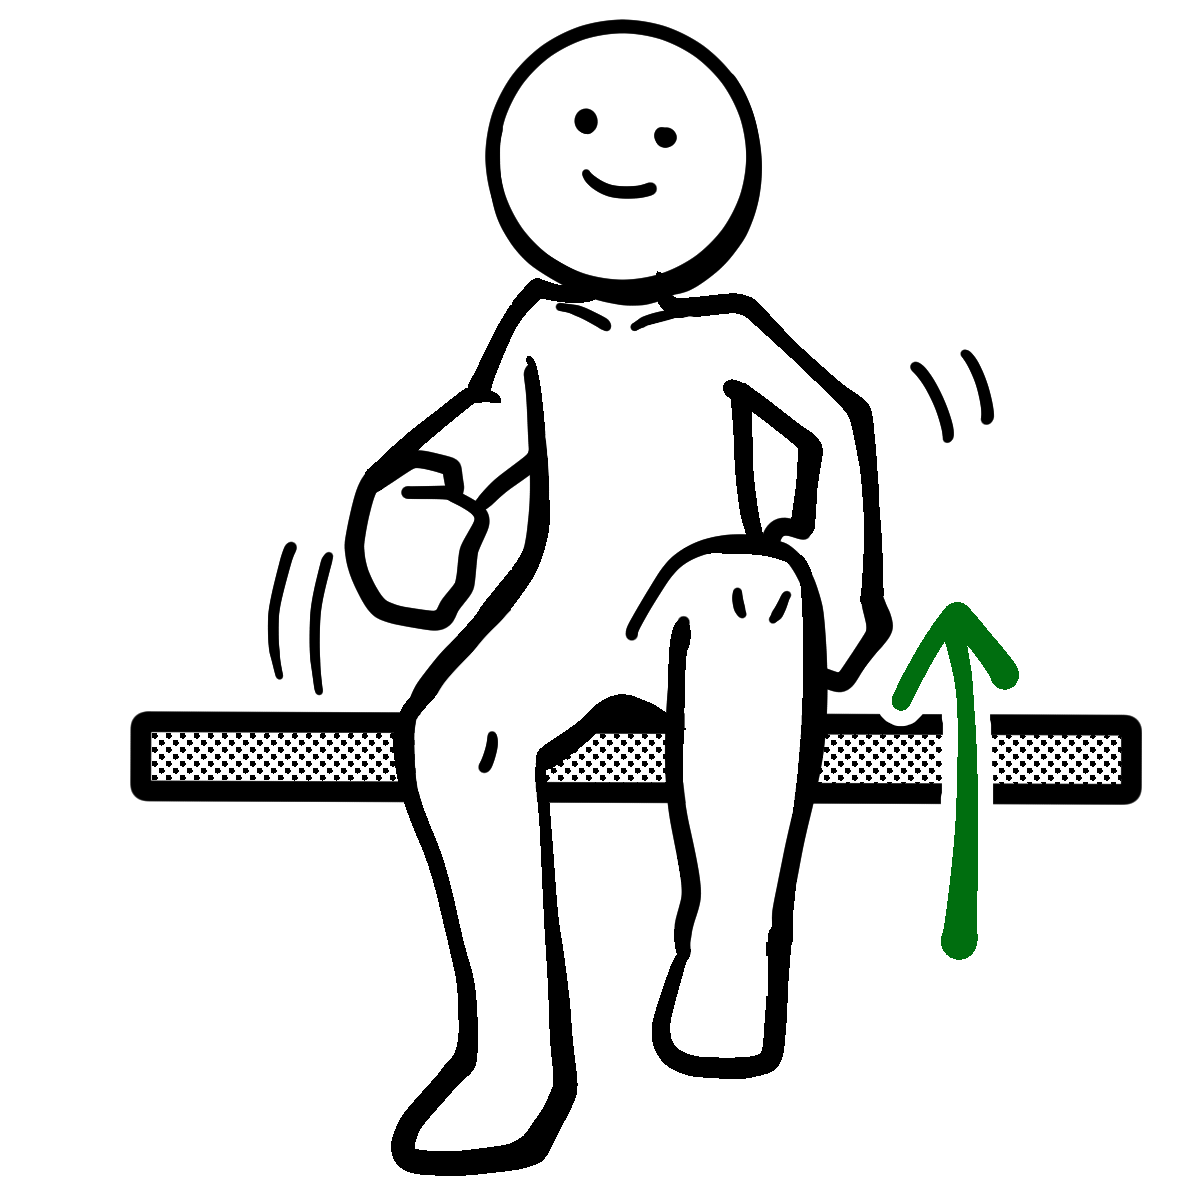 座って足踏みをしている人のイラスト Sit Down And Step On Illustration 健康体操イラスト の無料フリー素材サイト りはぴく